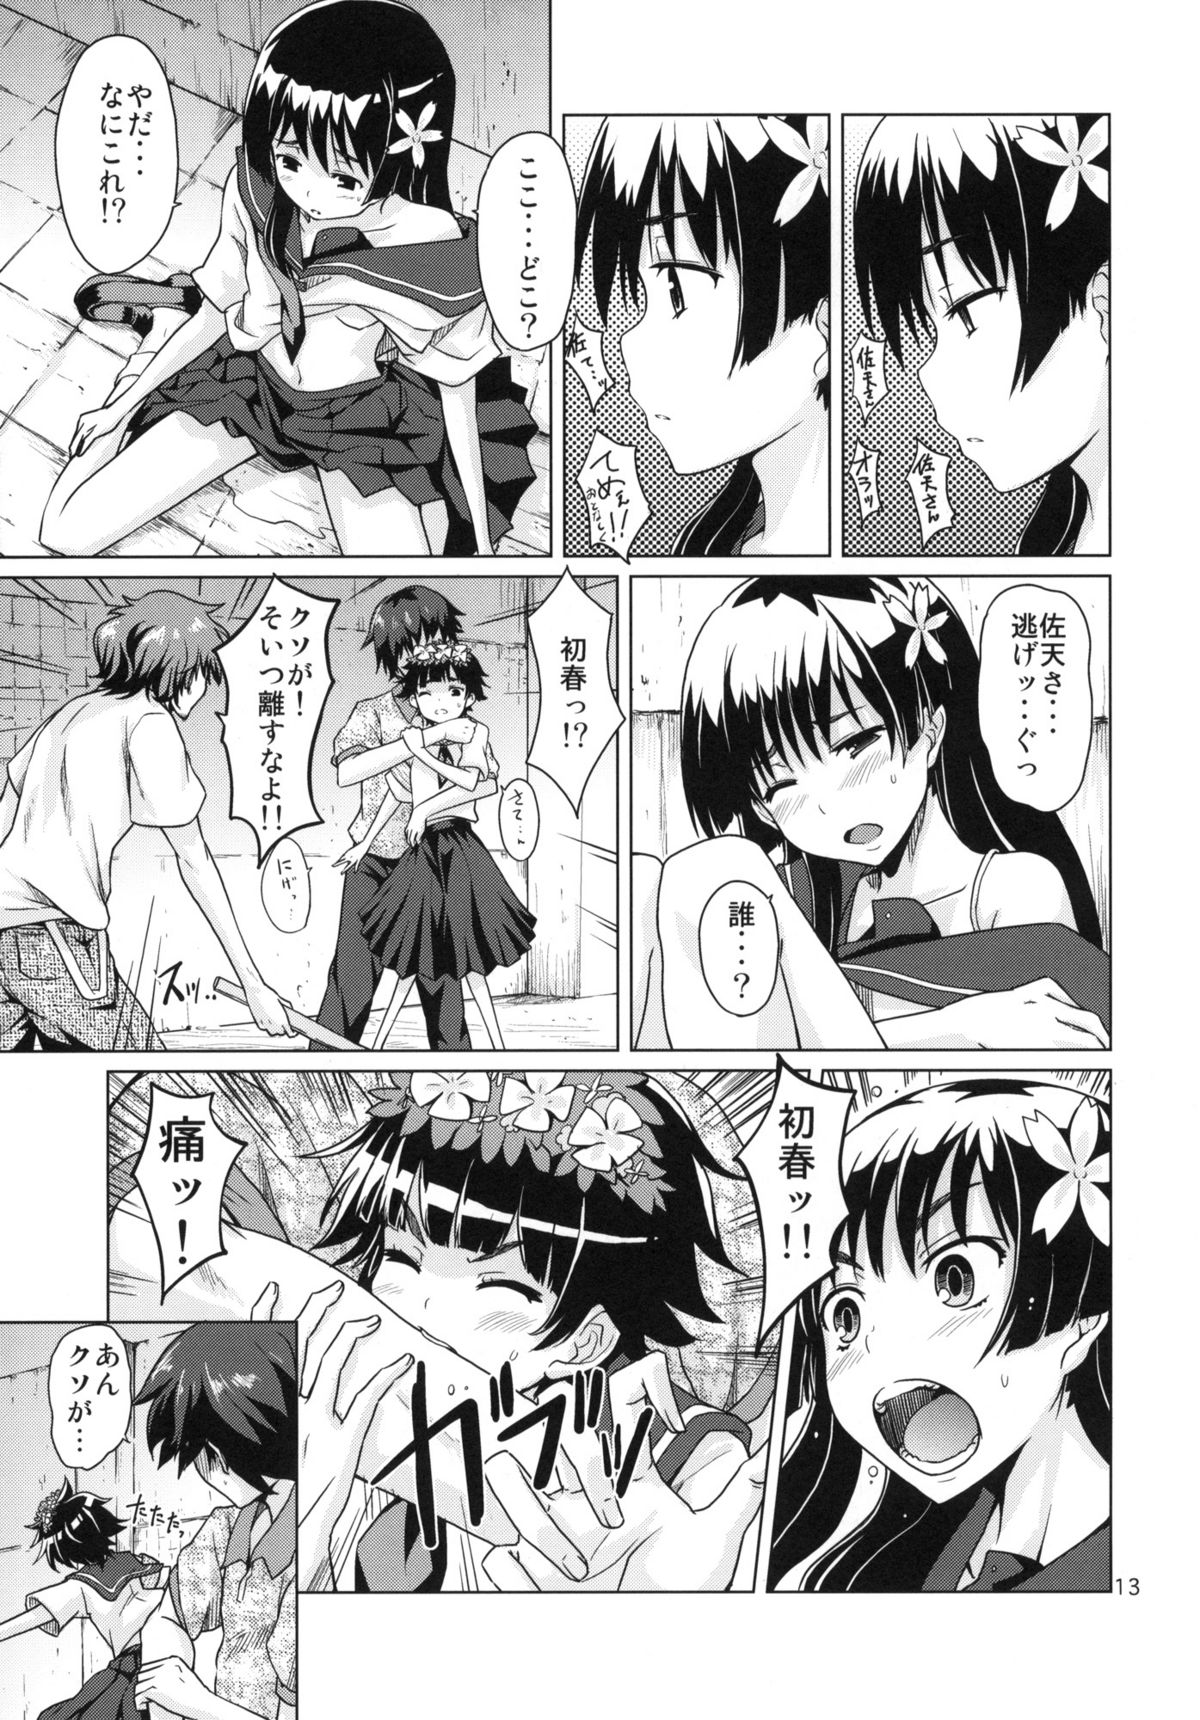 [MMU2000 (Mishima Hiroji)] i.Saten (Toaru Kagaku no Railgun) page 14 full